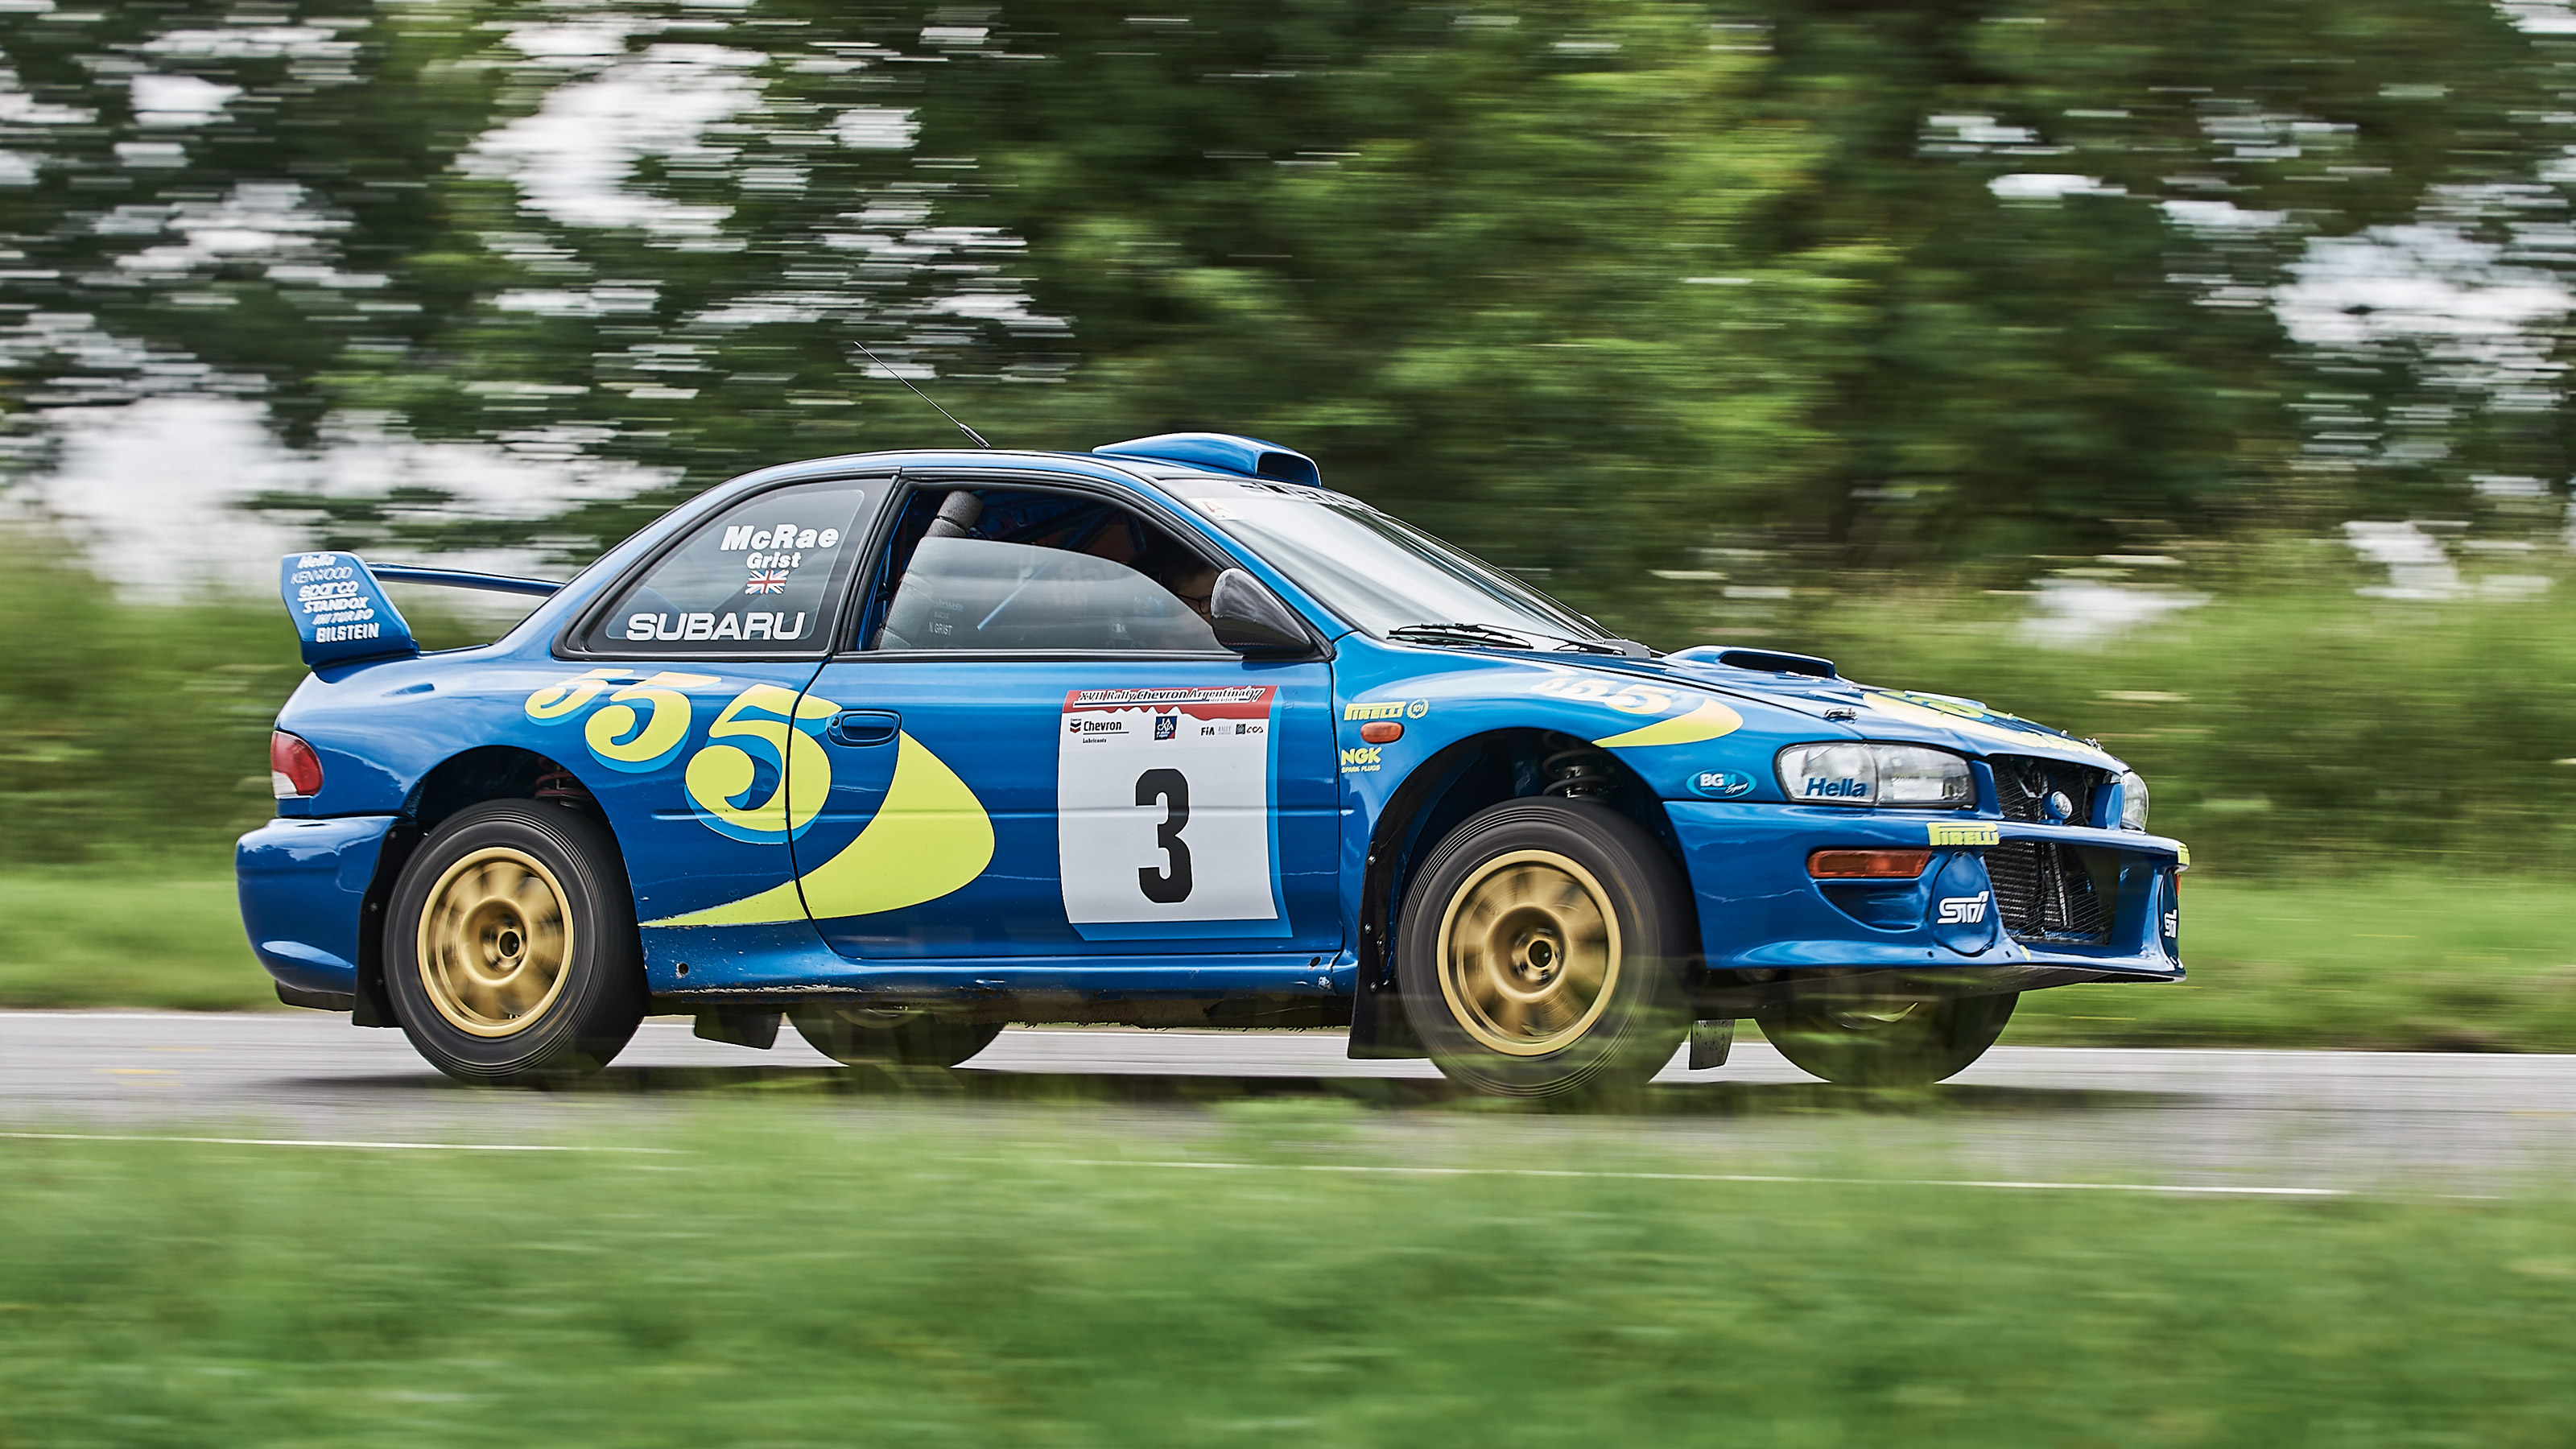 Driving Colin McRae's Subaru Impreza S3 WRC 97 evo